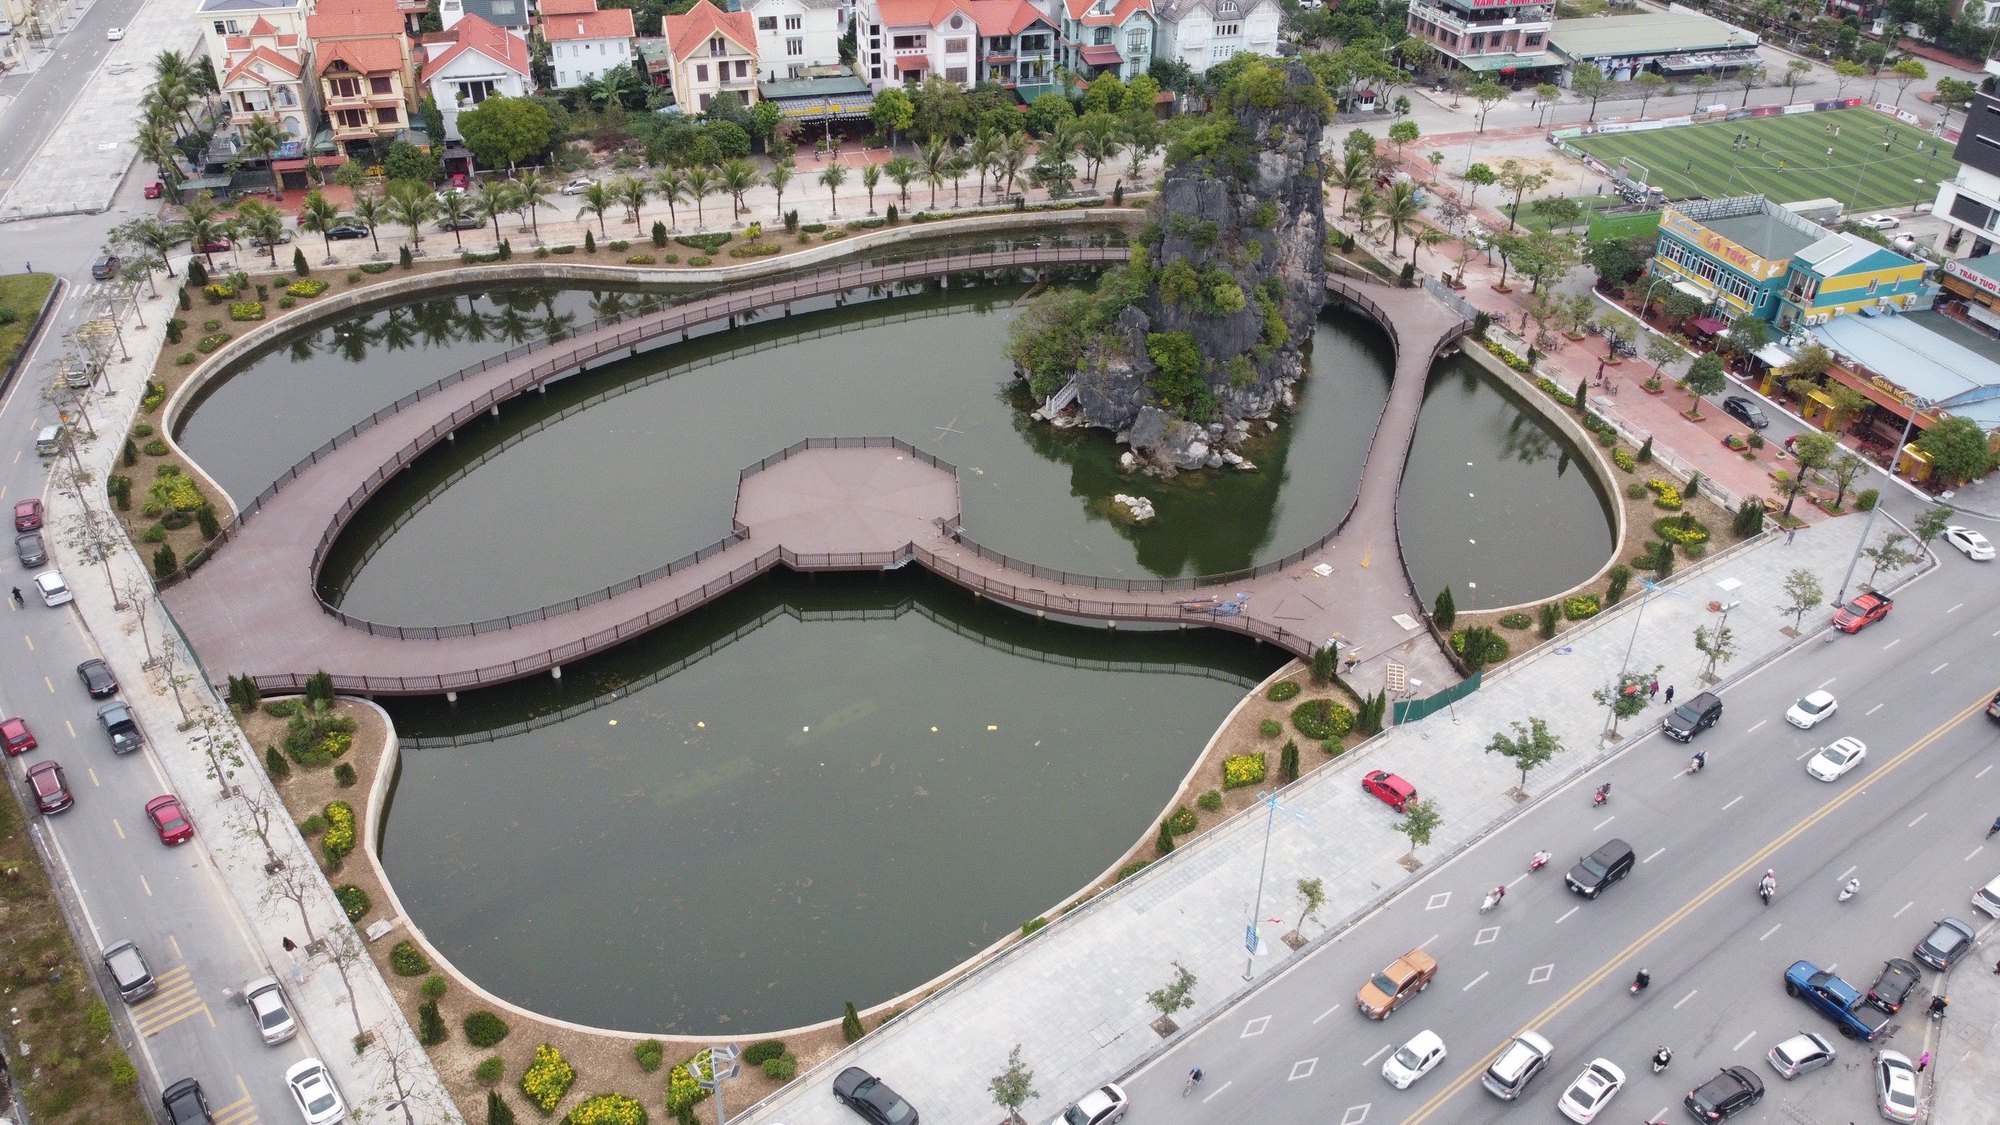 Quảng Ninh: Ấn tượng cây cầu bao quanh hòn non bộ khổng lồ ở Hạ Long - Ảnh 1.